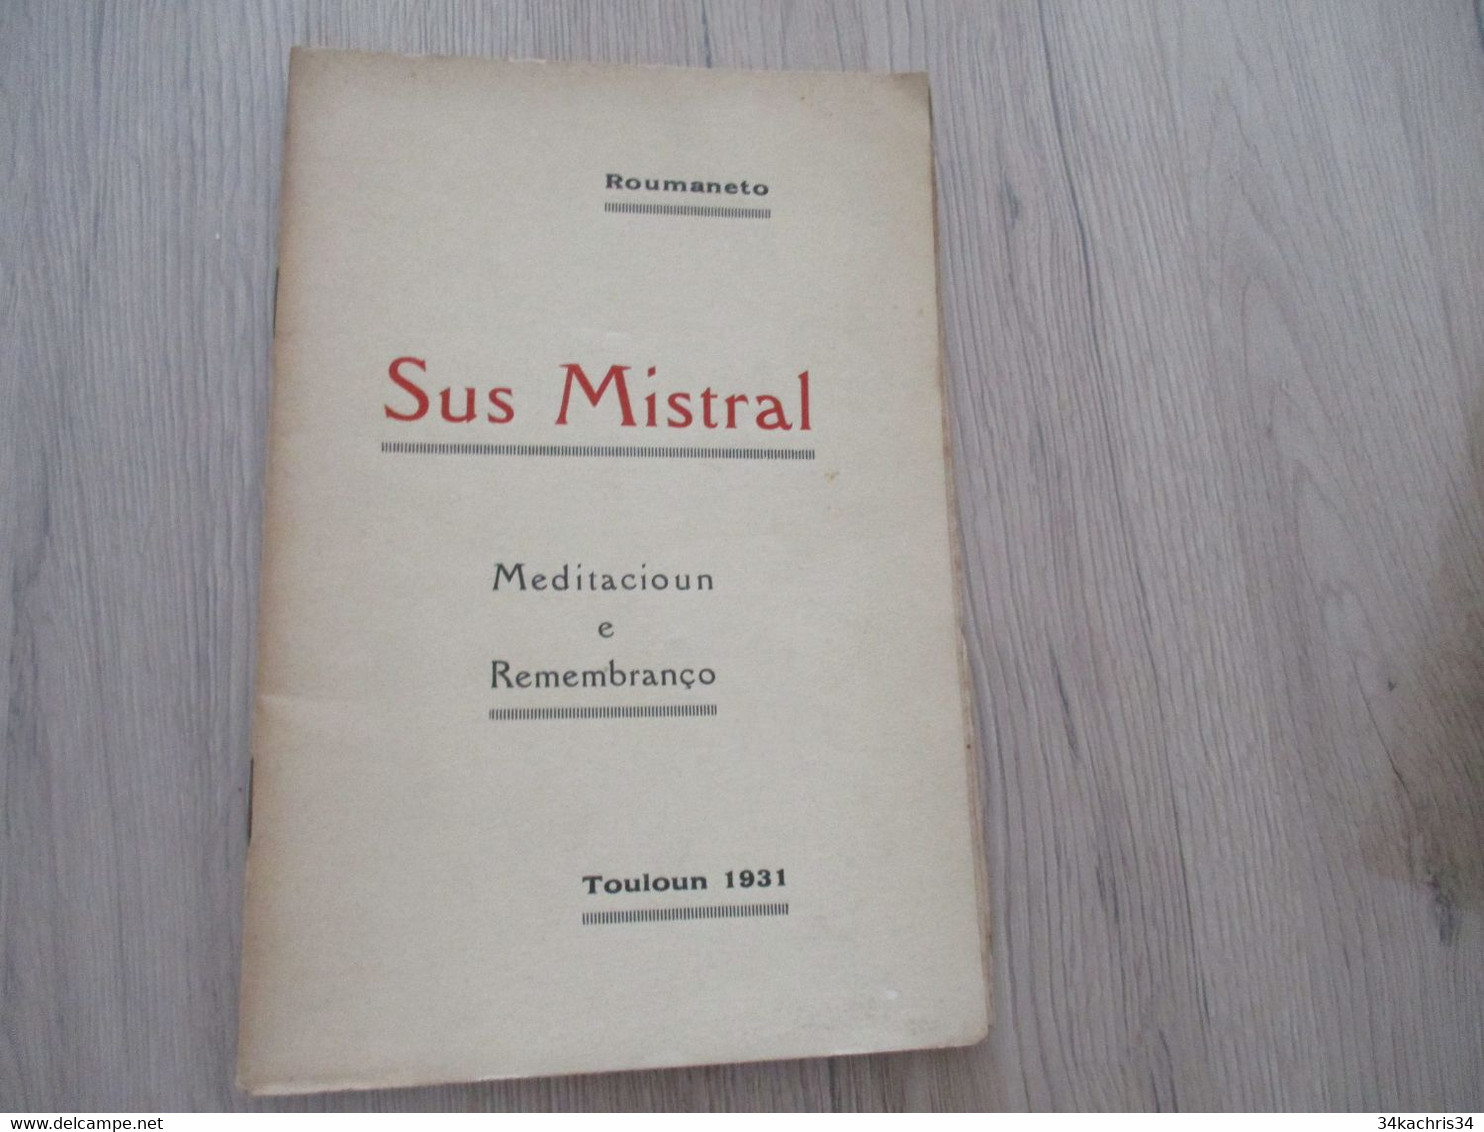 Provençal Félibrige  Mistral Roumaneto Envoi Autographe De L'auteur Sur Livre 1931 Sus Mistral Meditacioun Remembranço - Poetry